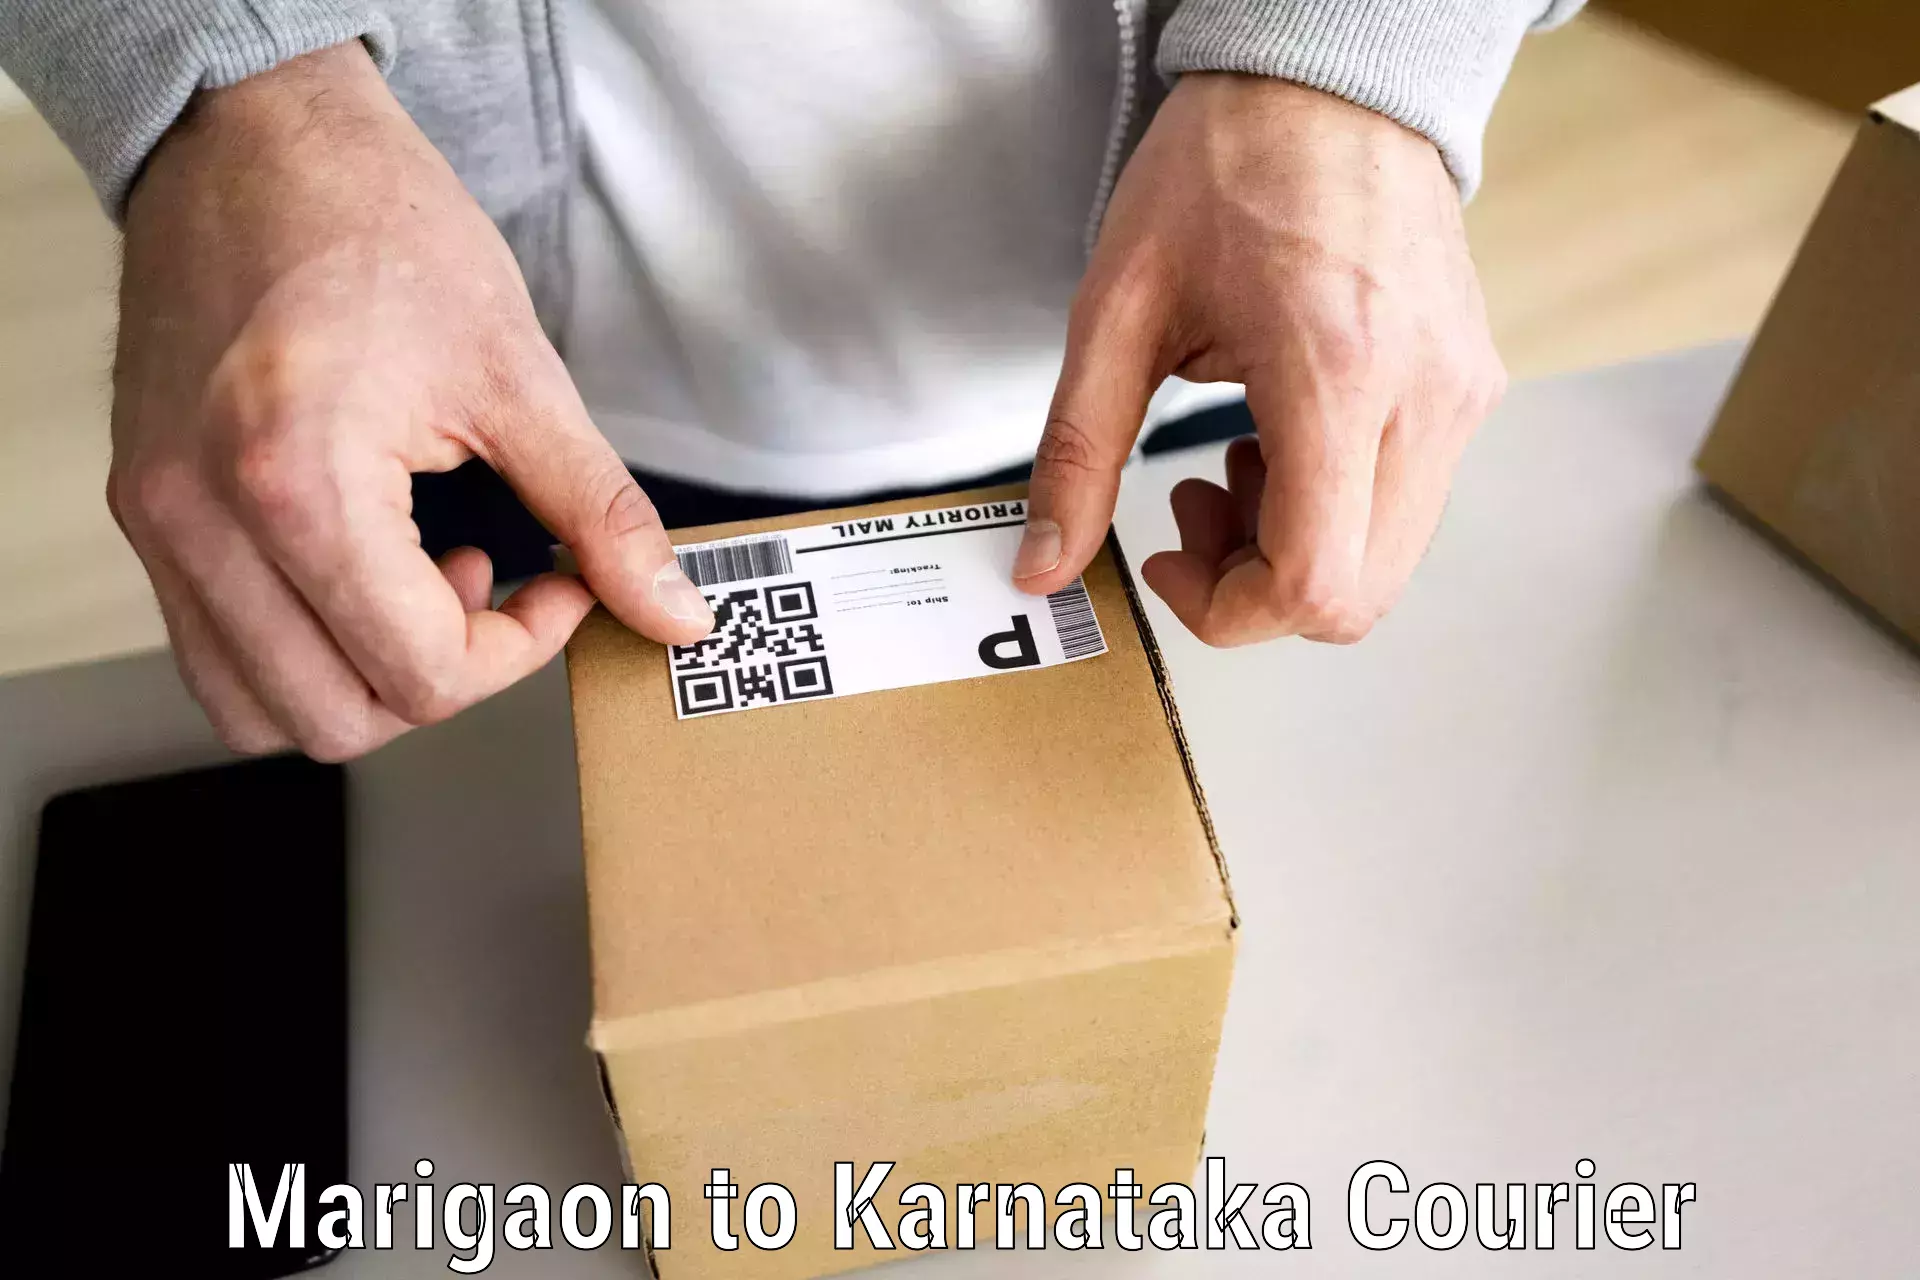 Furniture moving experts Marigaon to Karnataka